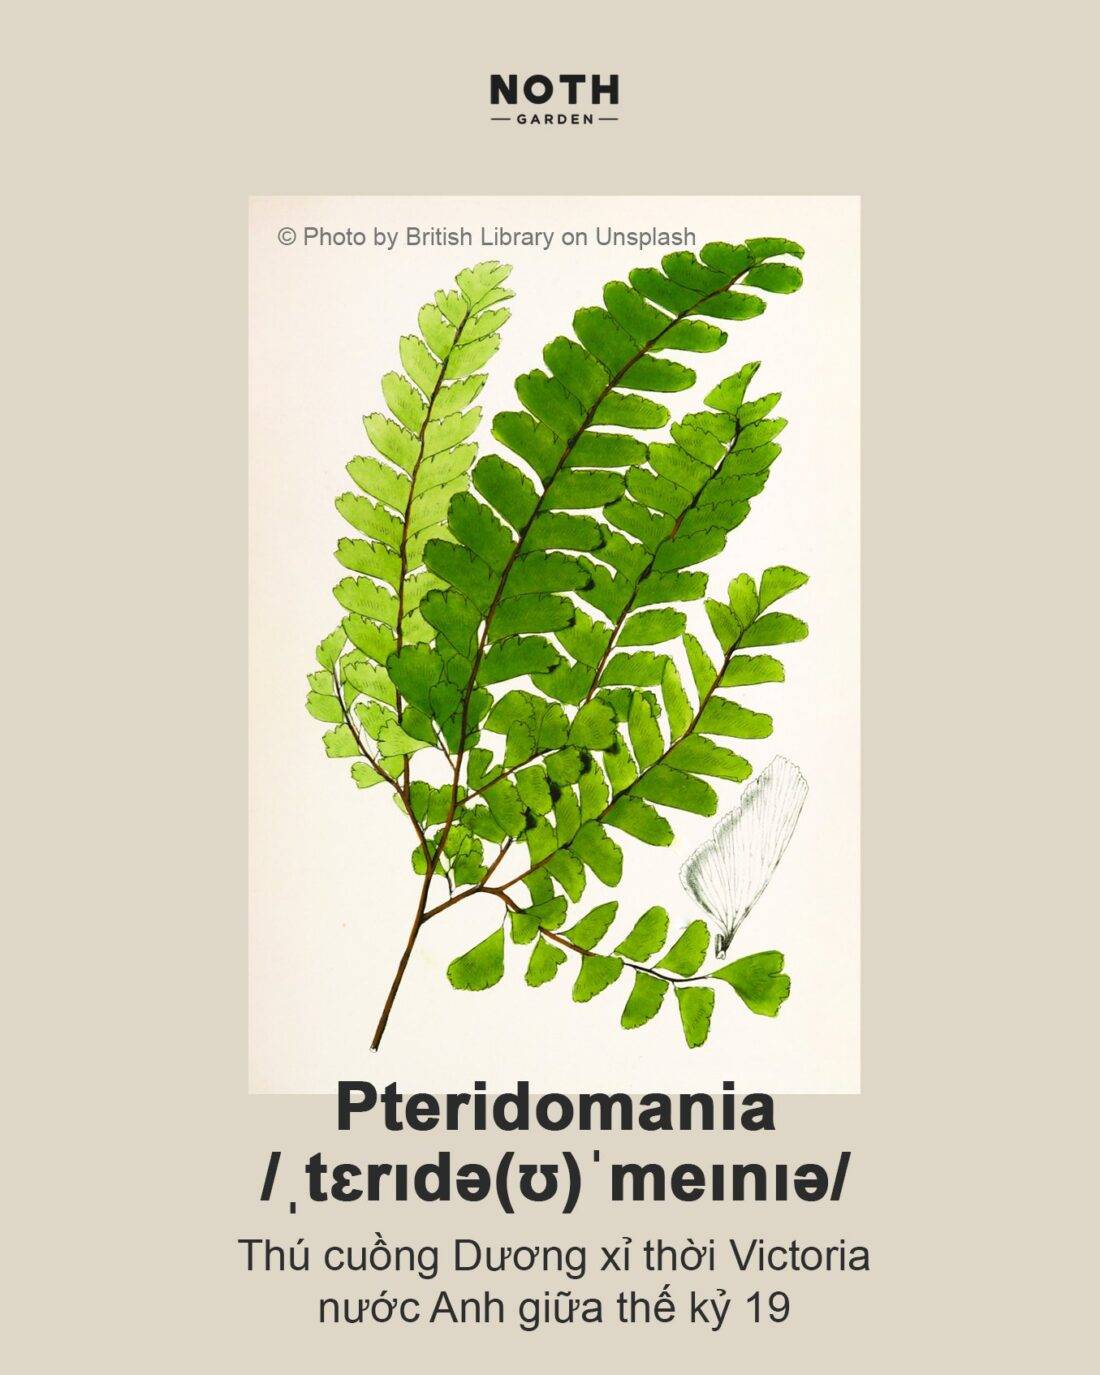 Pteridomania: Hình ảnh về Pteridomania sẽ khiến bạn liên tưởng đến một thời đại lãng mạn và cổ điển, khi mà người ta có đam mê với cây cối và thiên nhiên. Những hình ảnh này sẽ giúp bạn thấy rằng sự tôn trọng và yêu quý thiên nhiên luôn là tinh thần của con người, và đó là điều cần thiết để chúng ta tồn tại và phát triển.